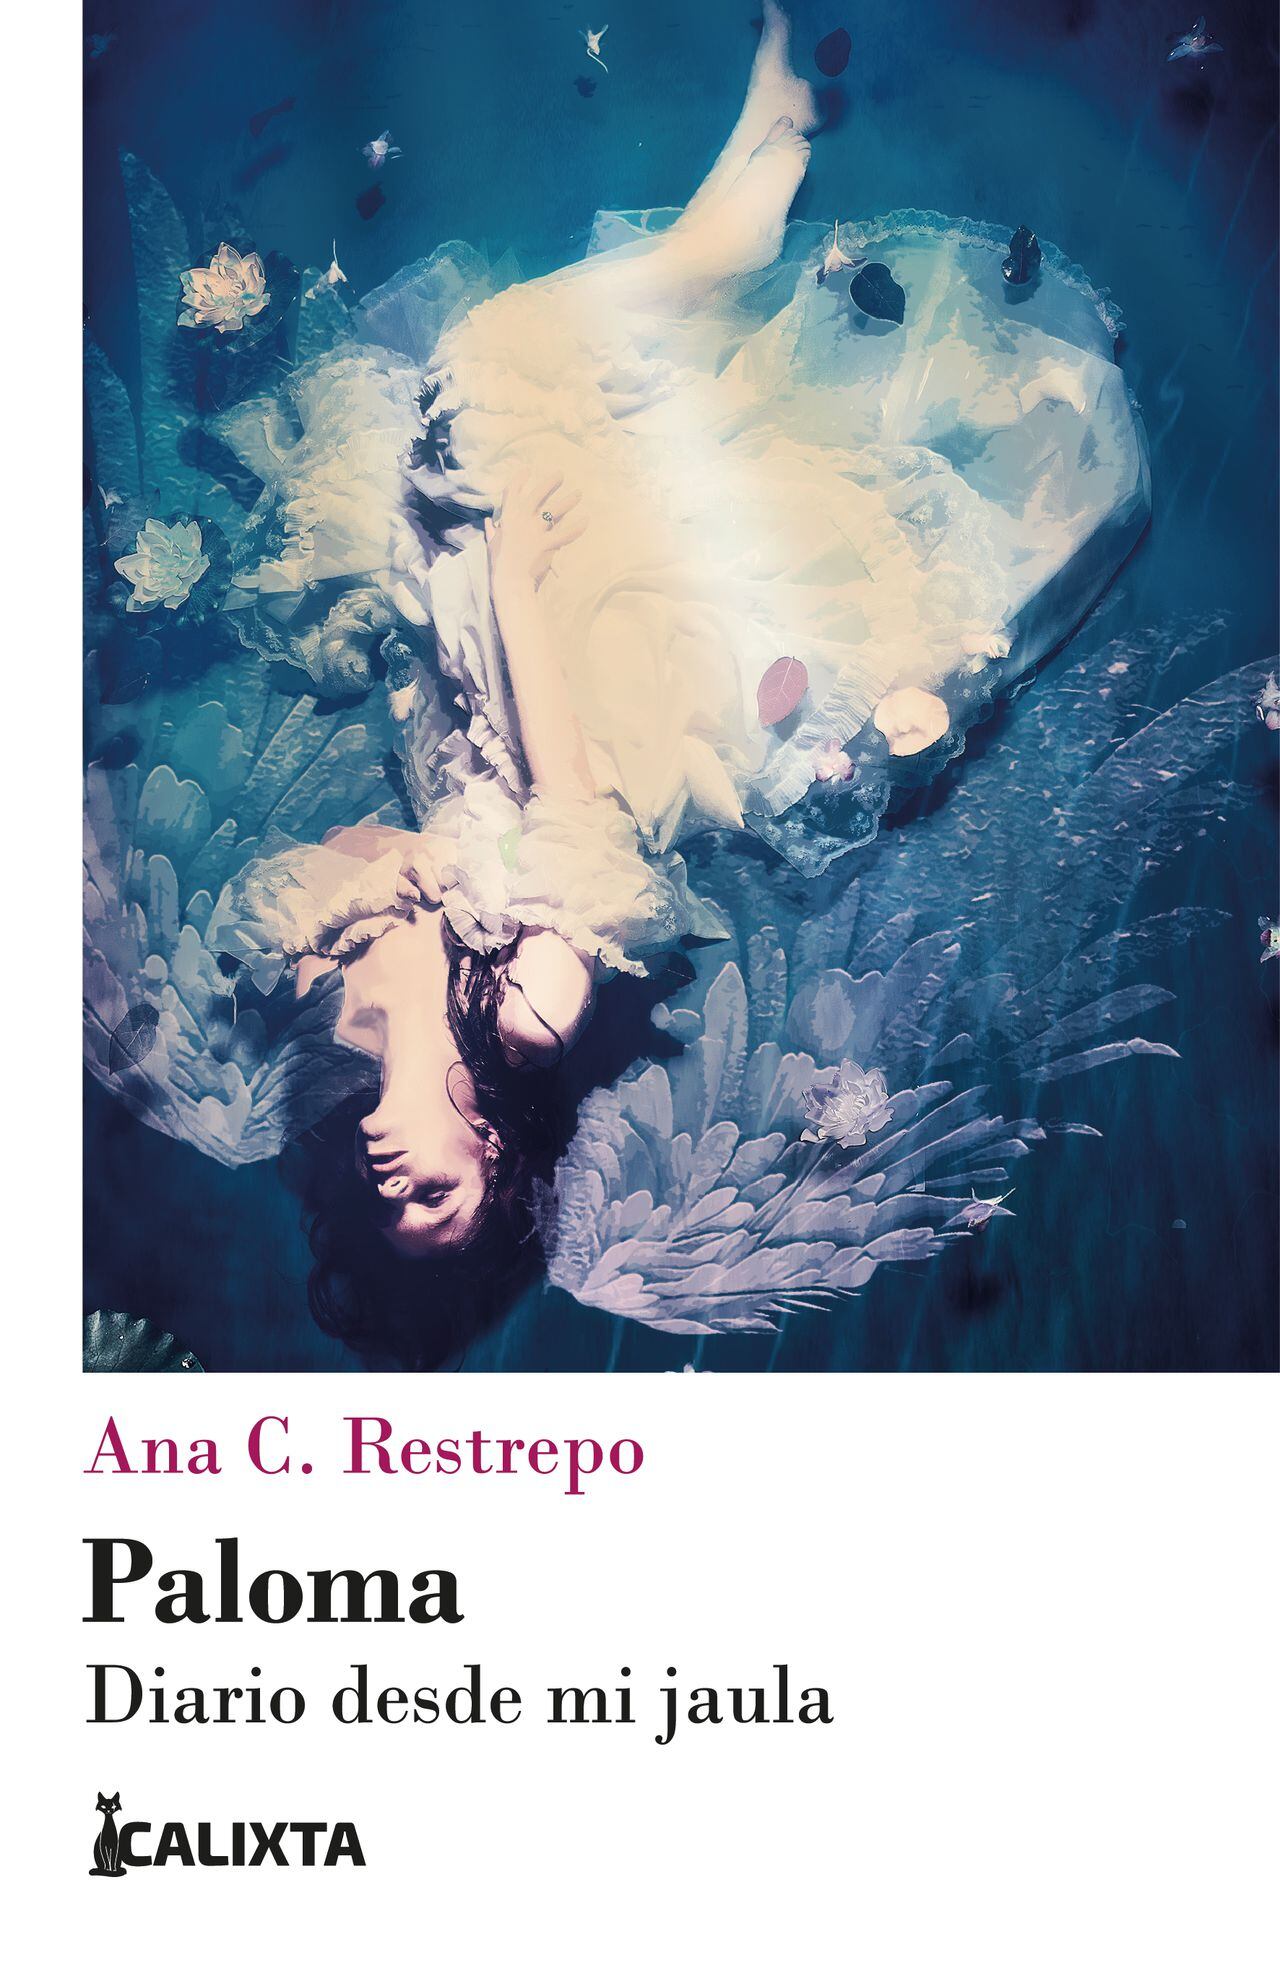 Ana Catalina Restrepo 'Paloma. Diario desde mi jaula'